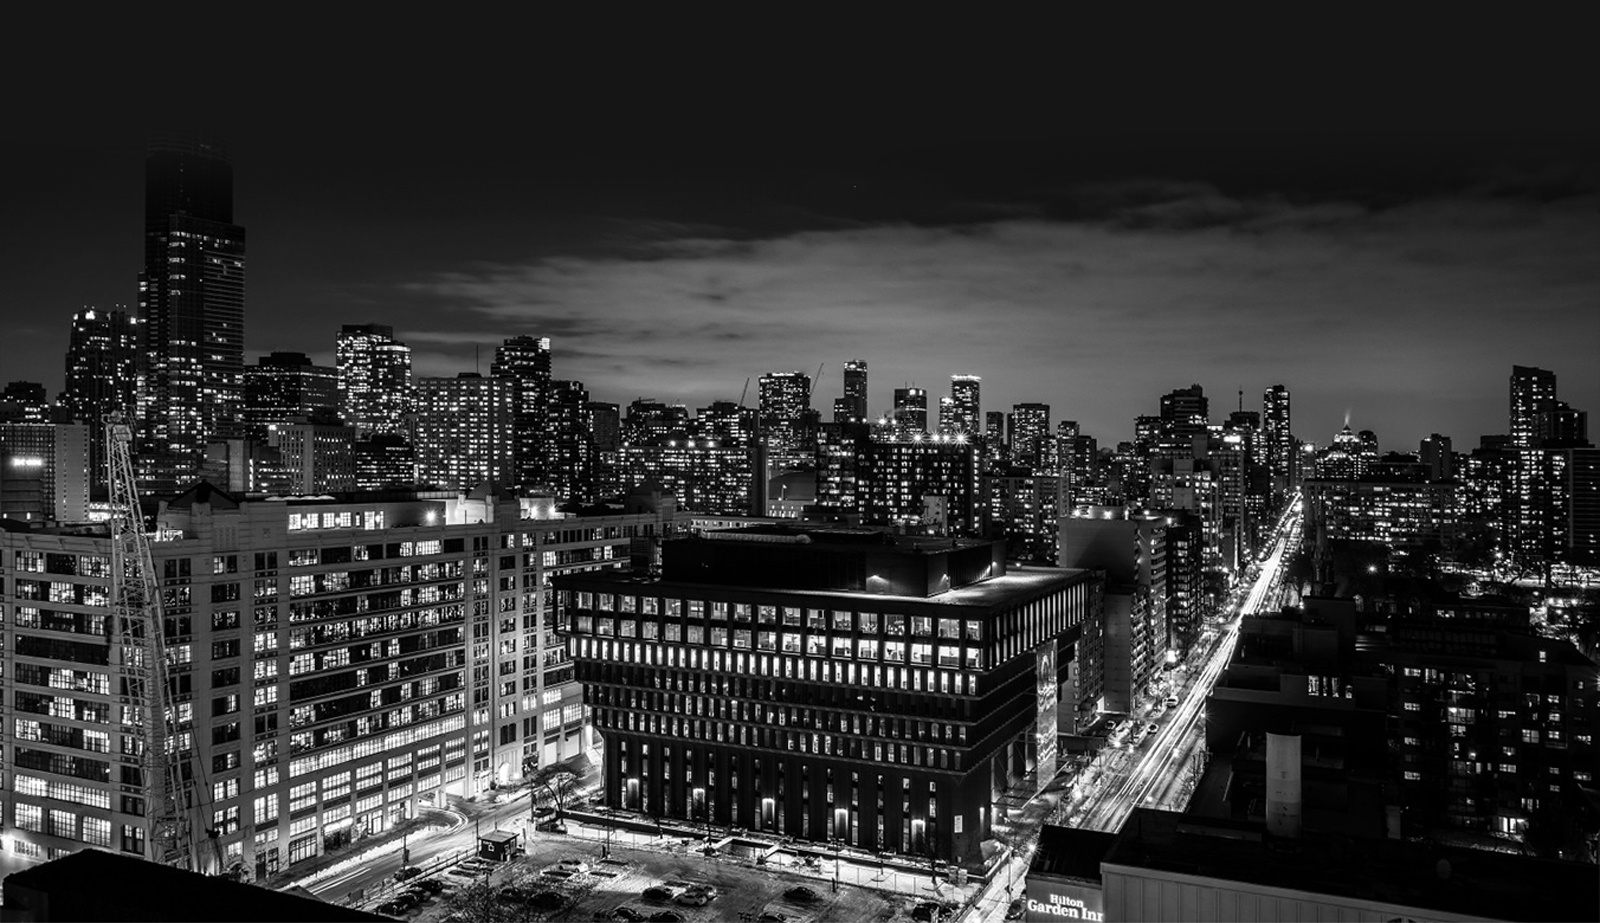 Monochrome Skyscraper - Editorial Photography Toronto by Matt Tibbo